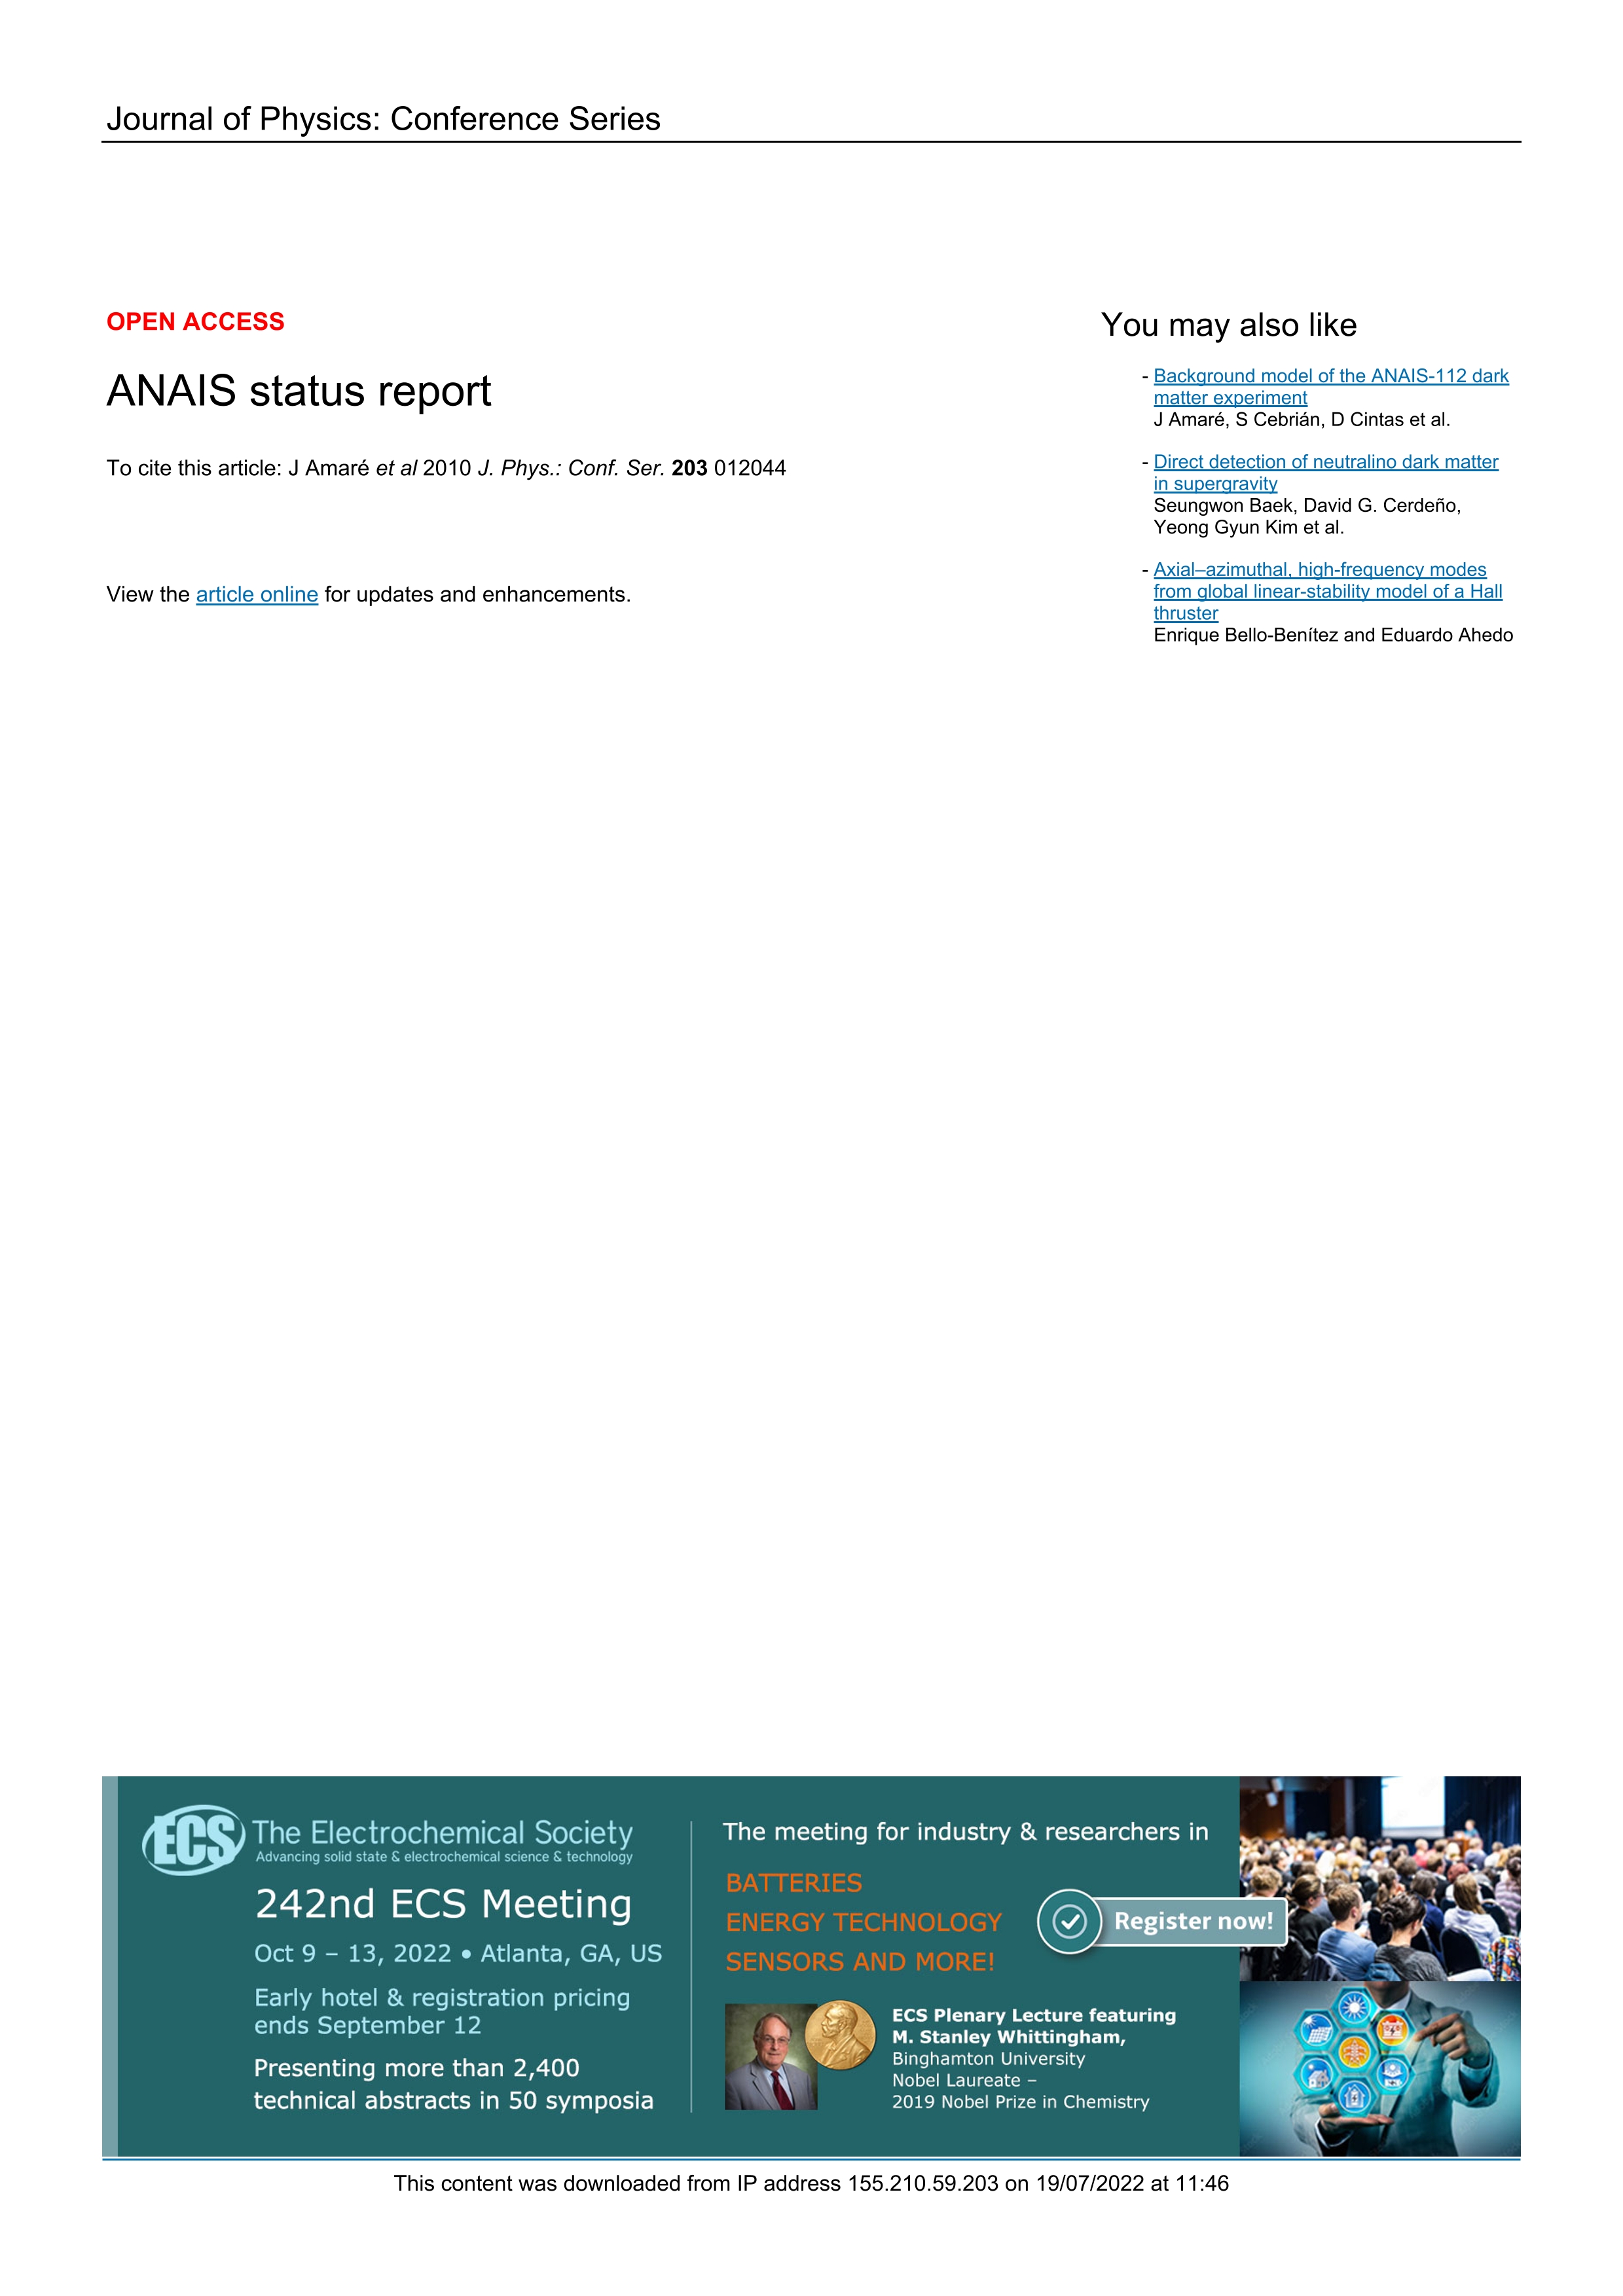 ANAIS status report